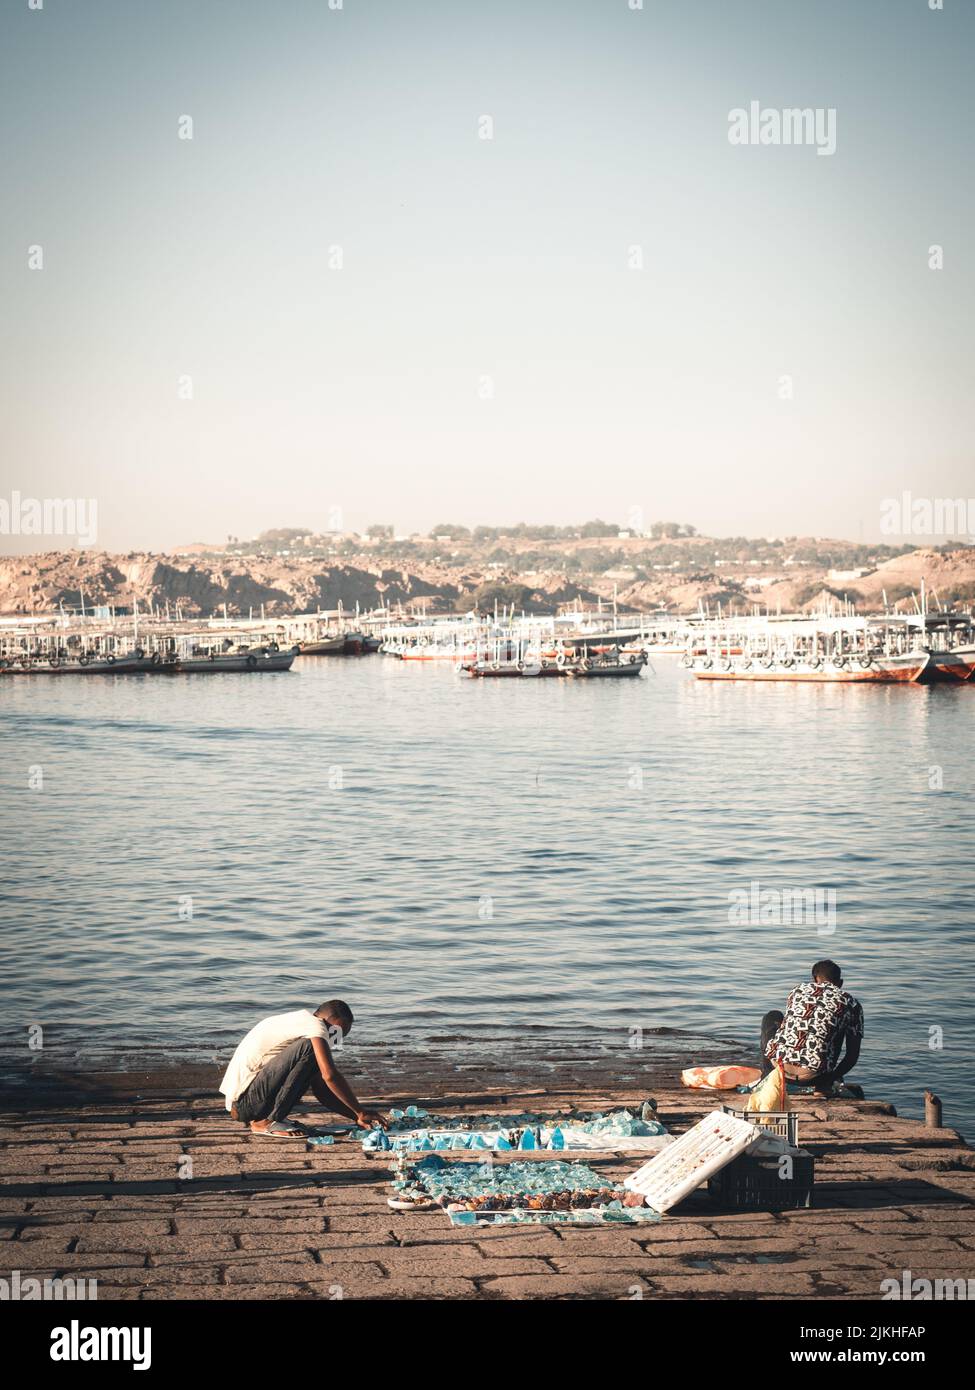 Una vista della gente su una riva di un lago Nasser con le barche nel sud dell'Egitto Foto Stock